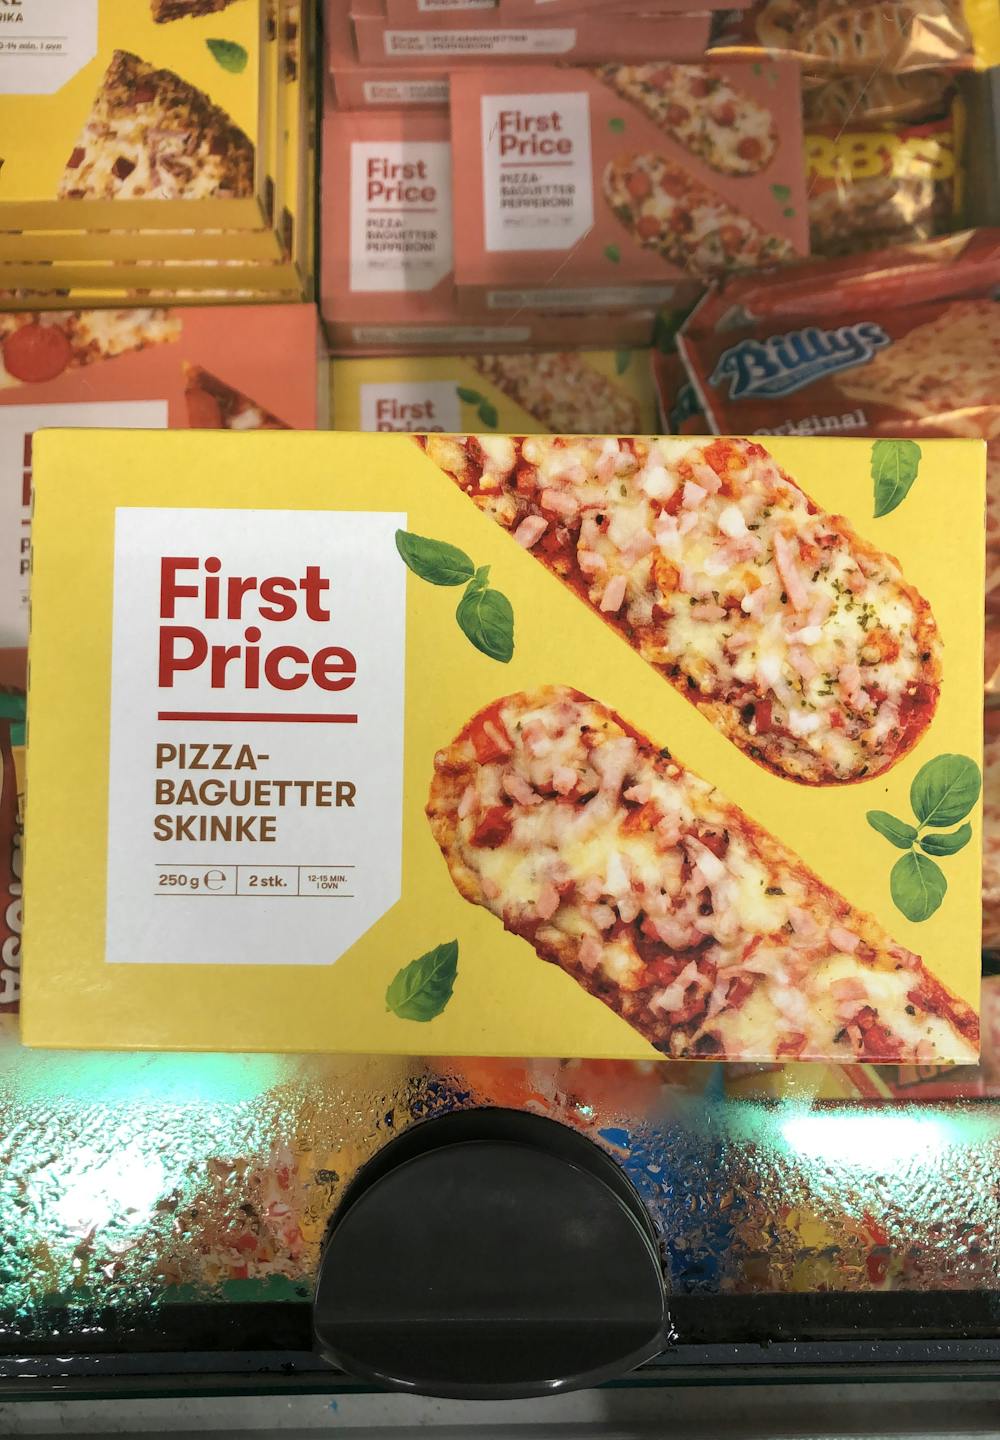 Pizzabaguetter, skinke, First Price